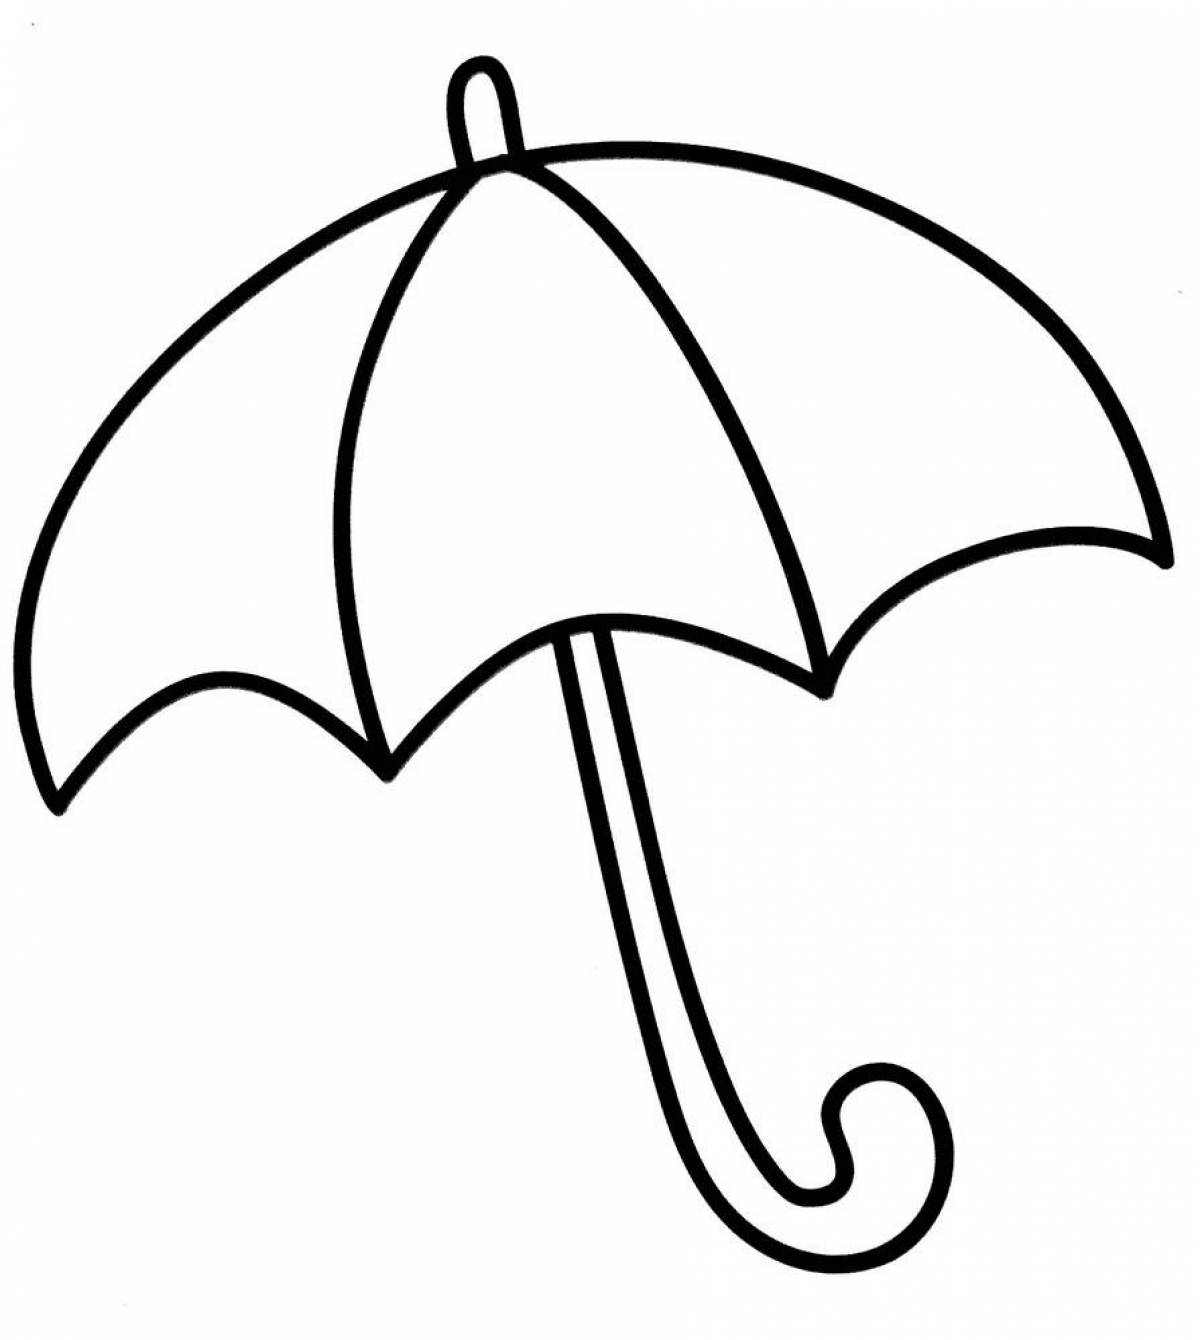 Живая страница раскраски зонтика в горошек